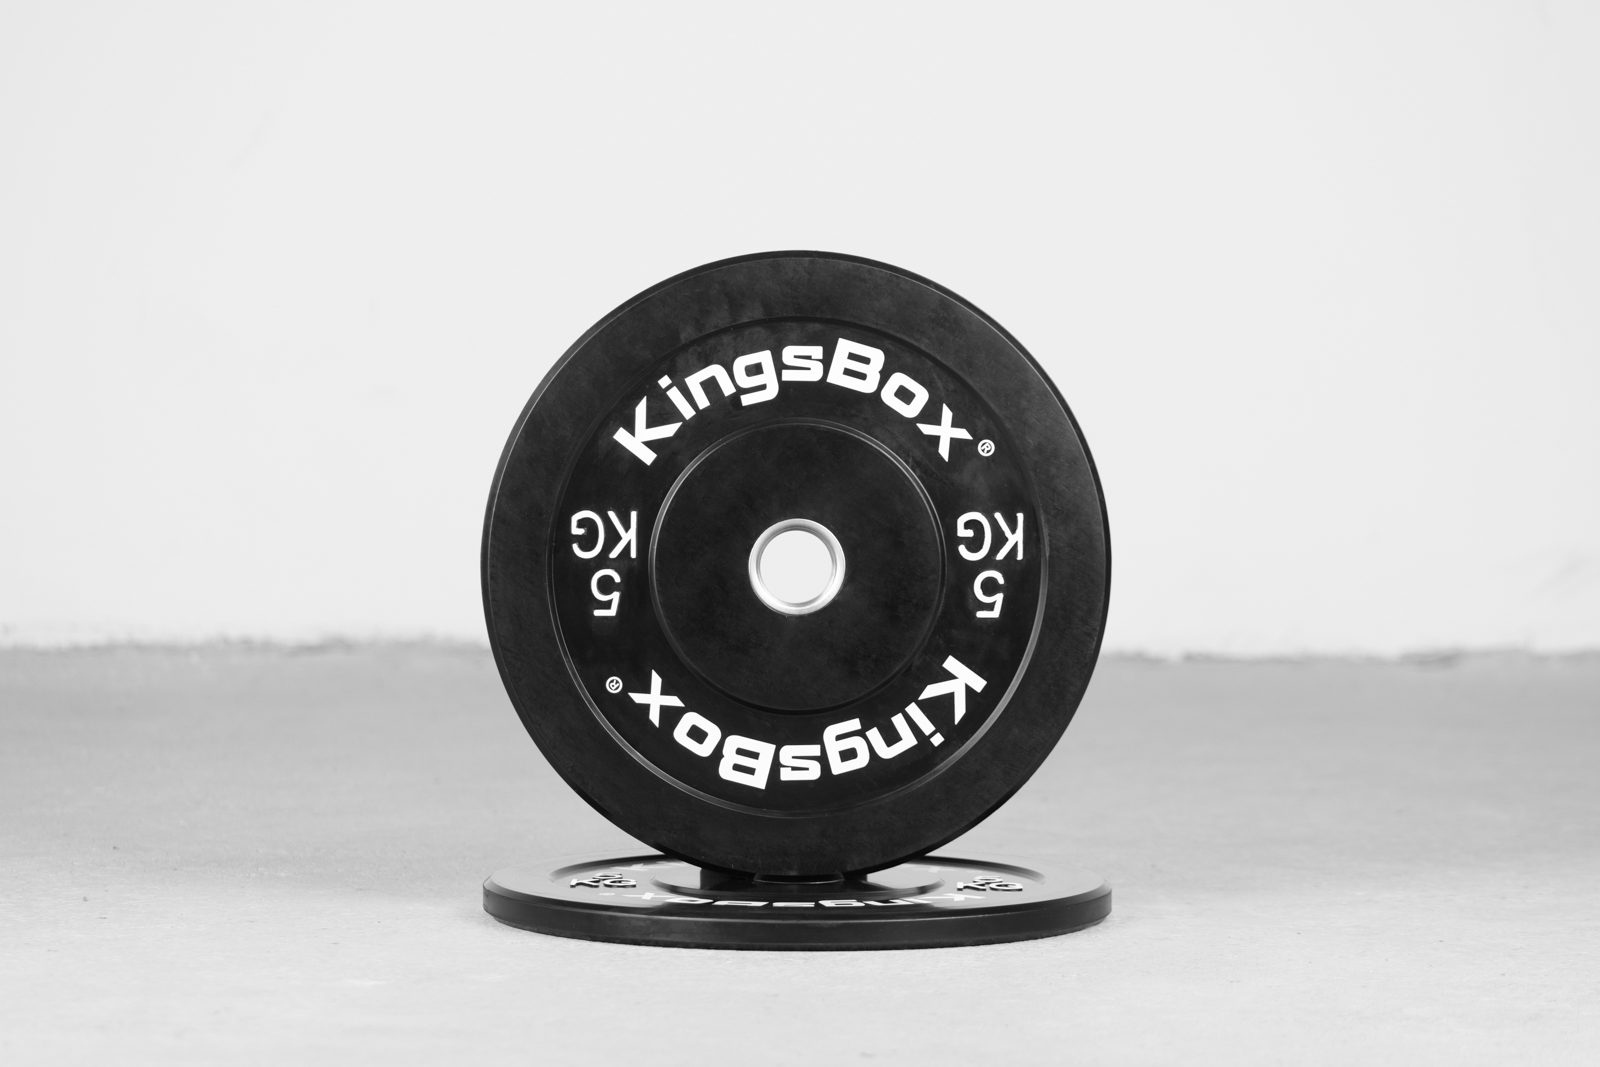 OUTLET - Kingsbox Basic Bumper Plates - 5kg